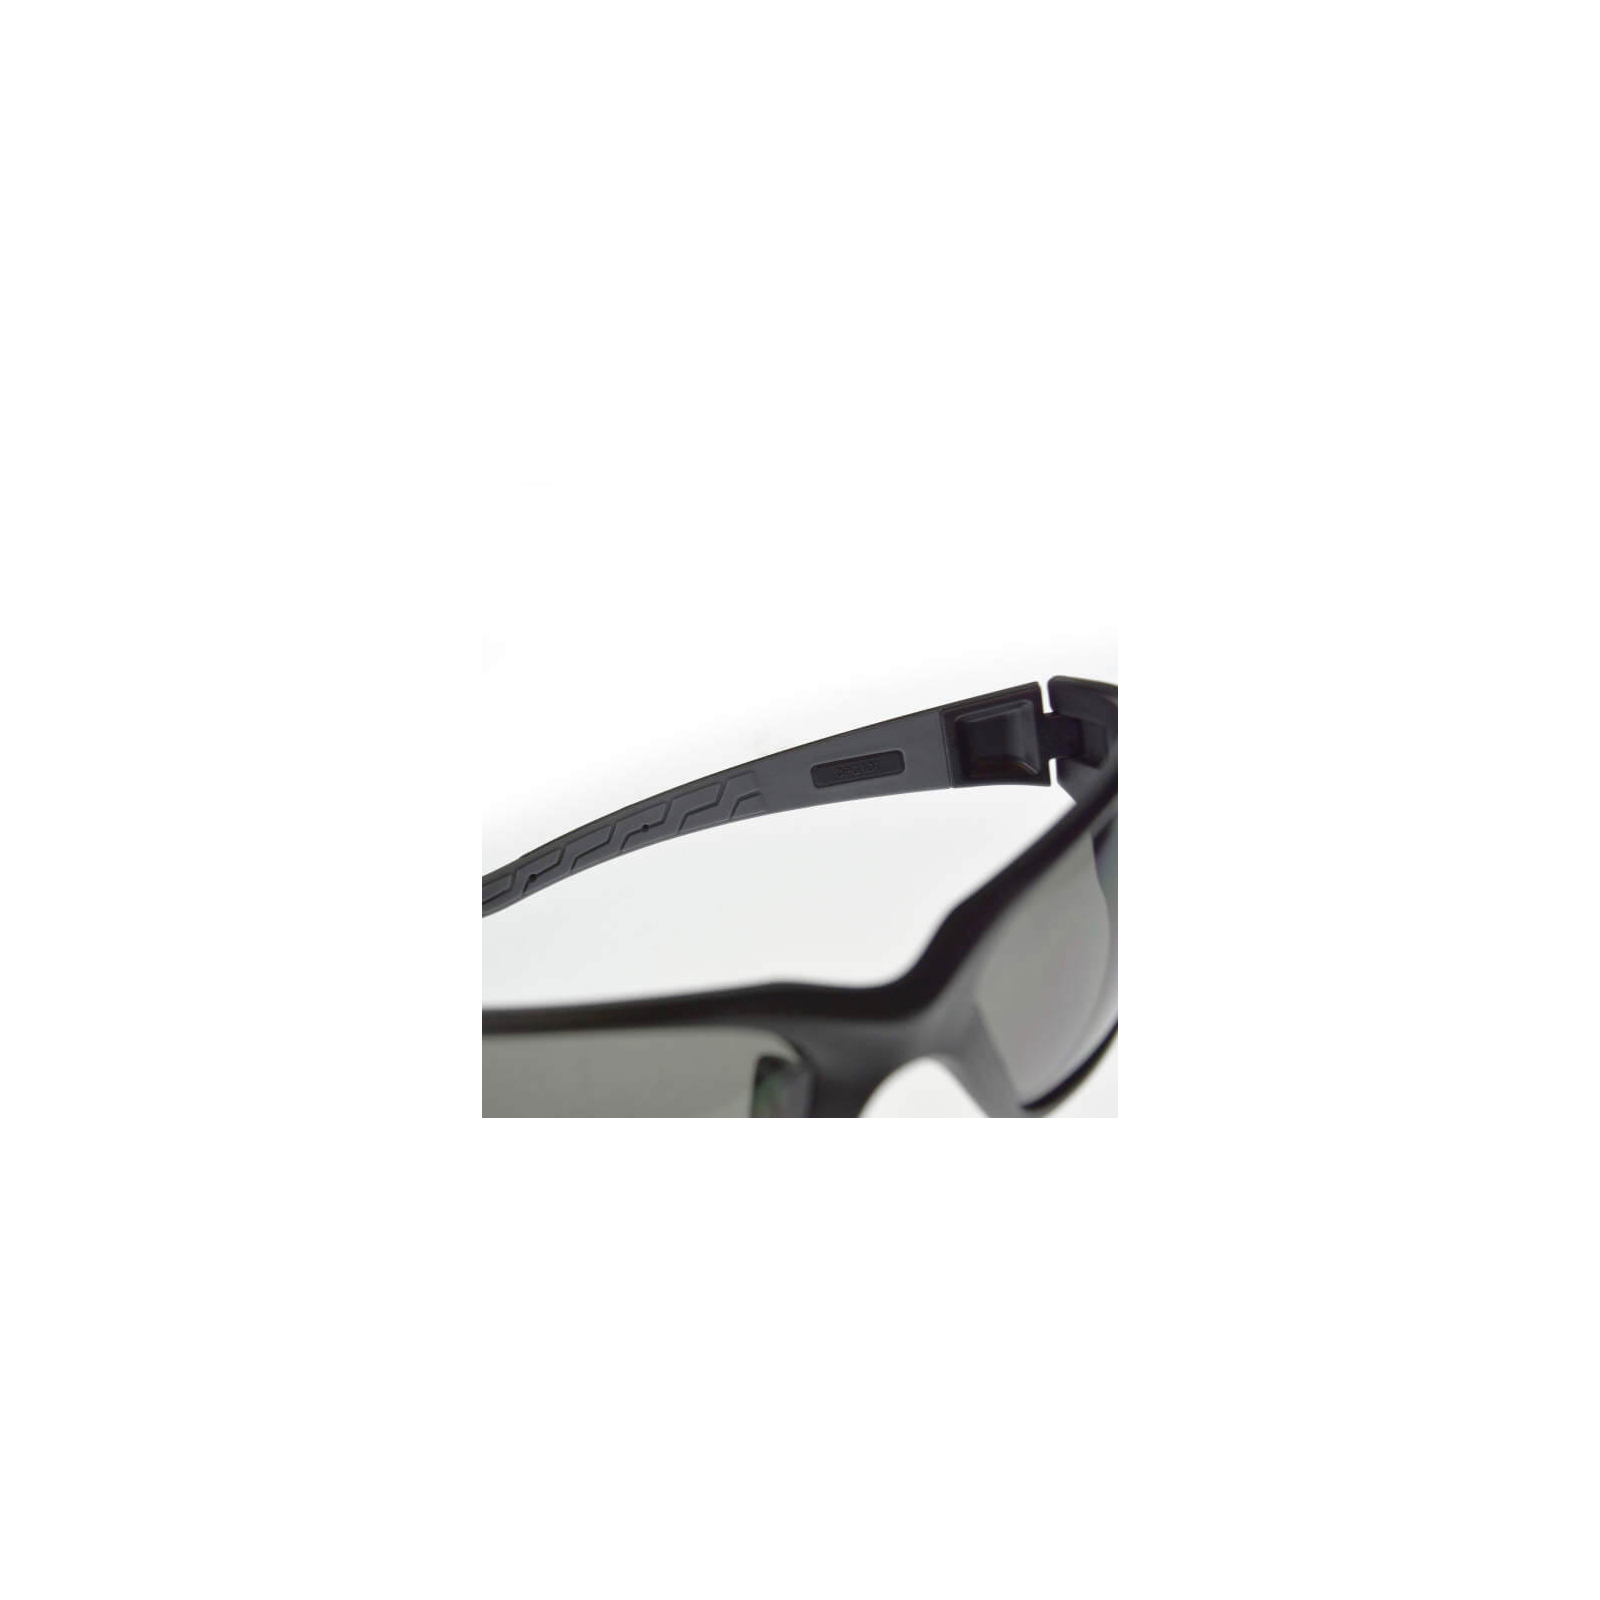 Защитные очки DeWALT Auger, тонированные, поликарбонатные (DPG101-2D) изображение 6